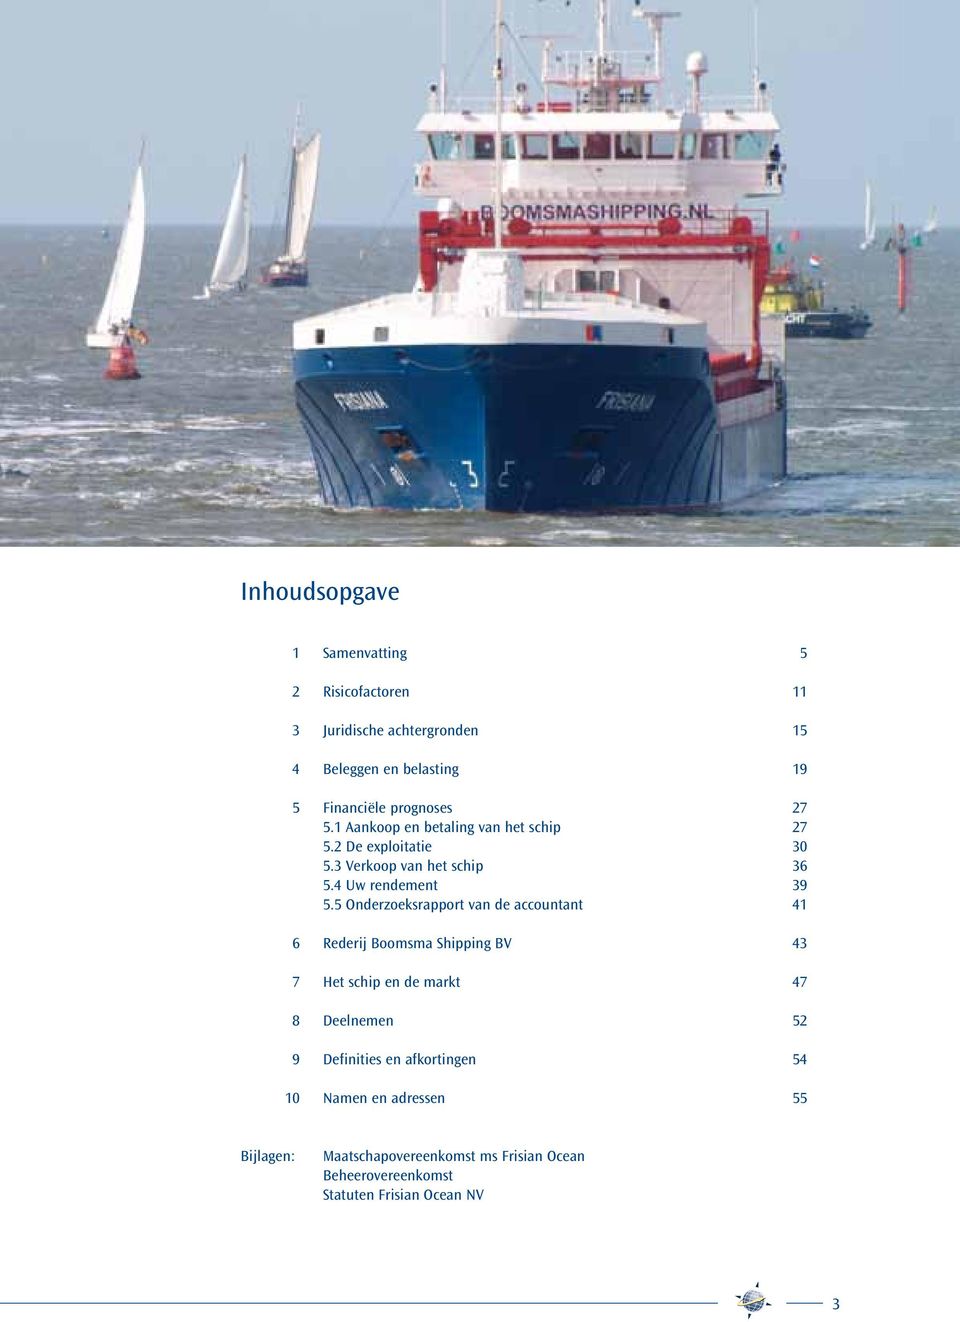 5 Onderzoeksrapport van de accountant 41 6 Rederij Boomsma Shipping BV 43 7 Het schip en de markt 47 8 Deelnemen 52 9 Definities